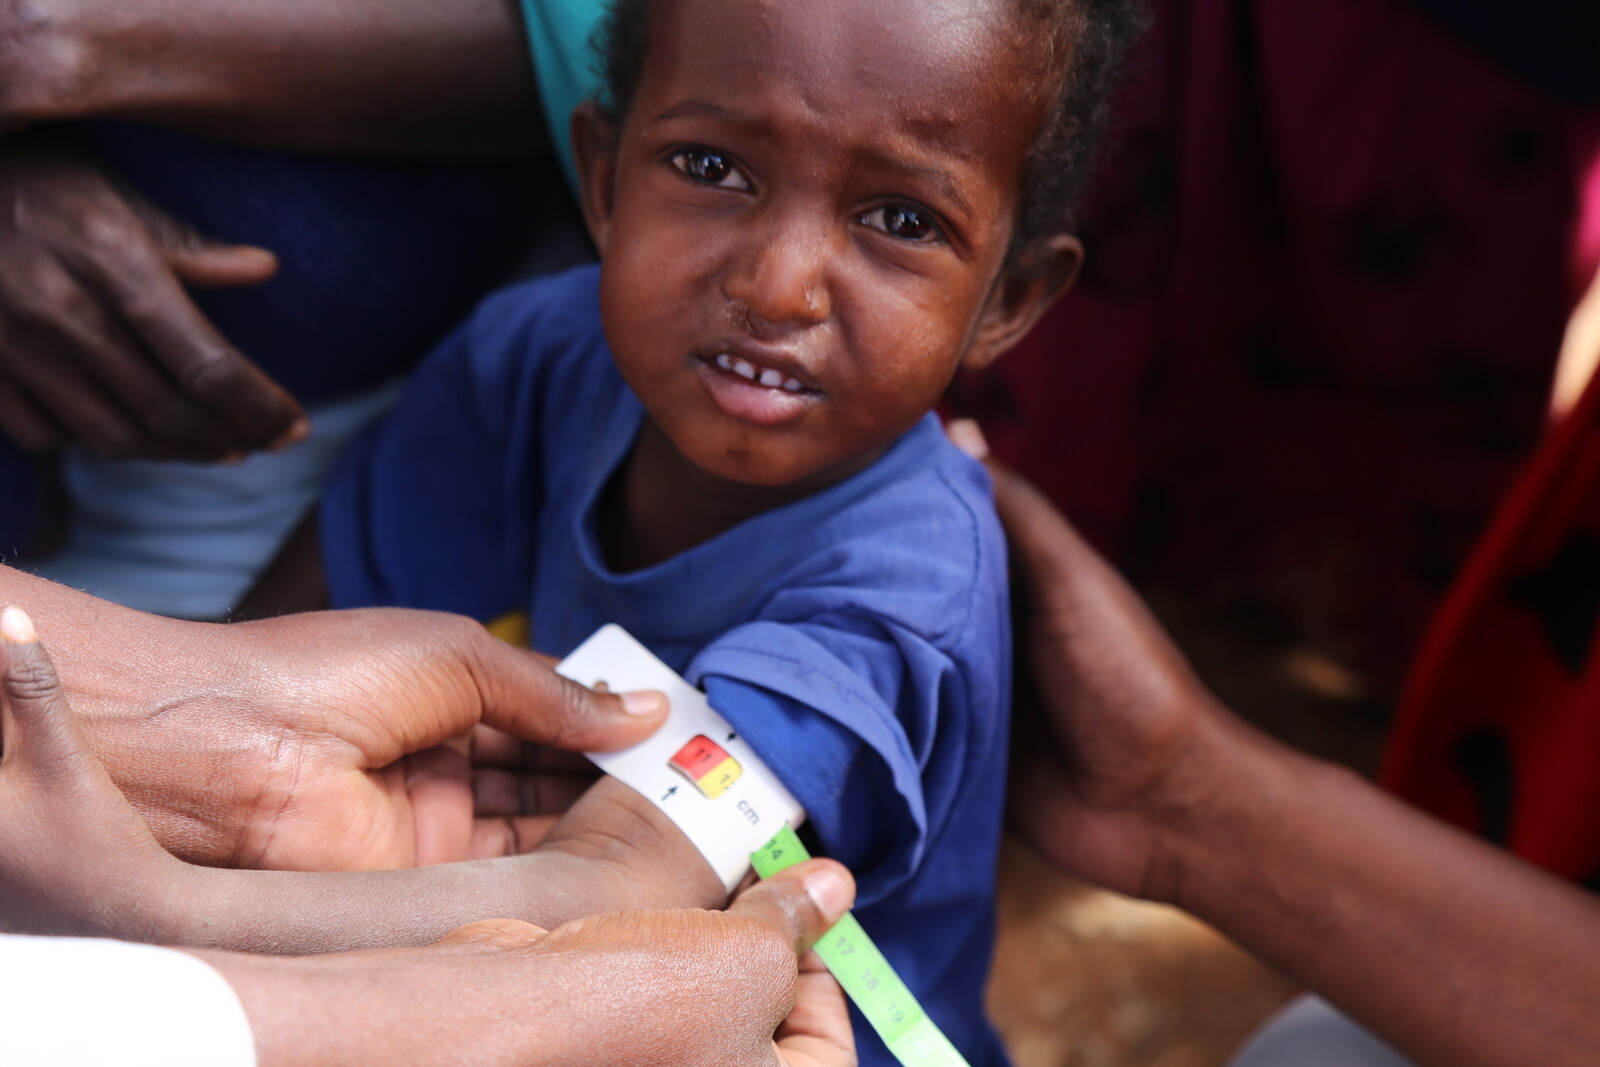 Ein Junge in Somalia wird mit medizinischer Hilfe versorgt.